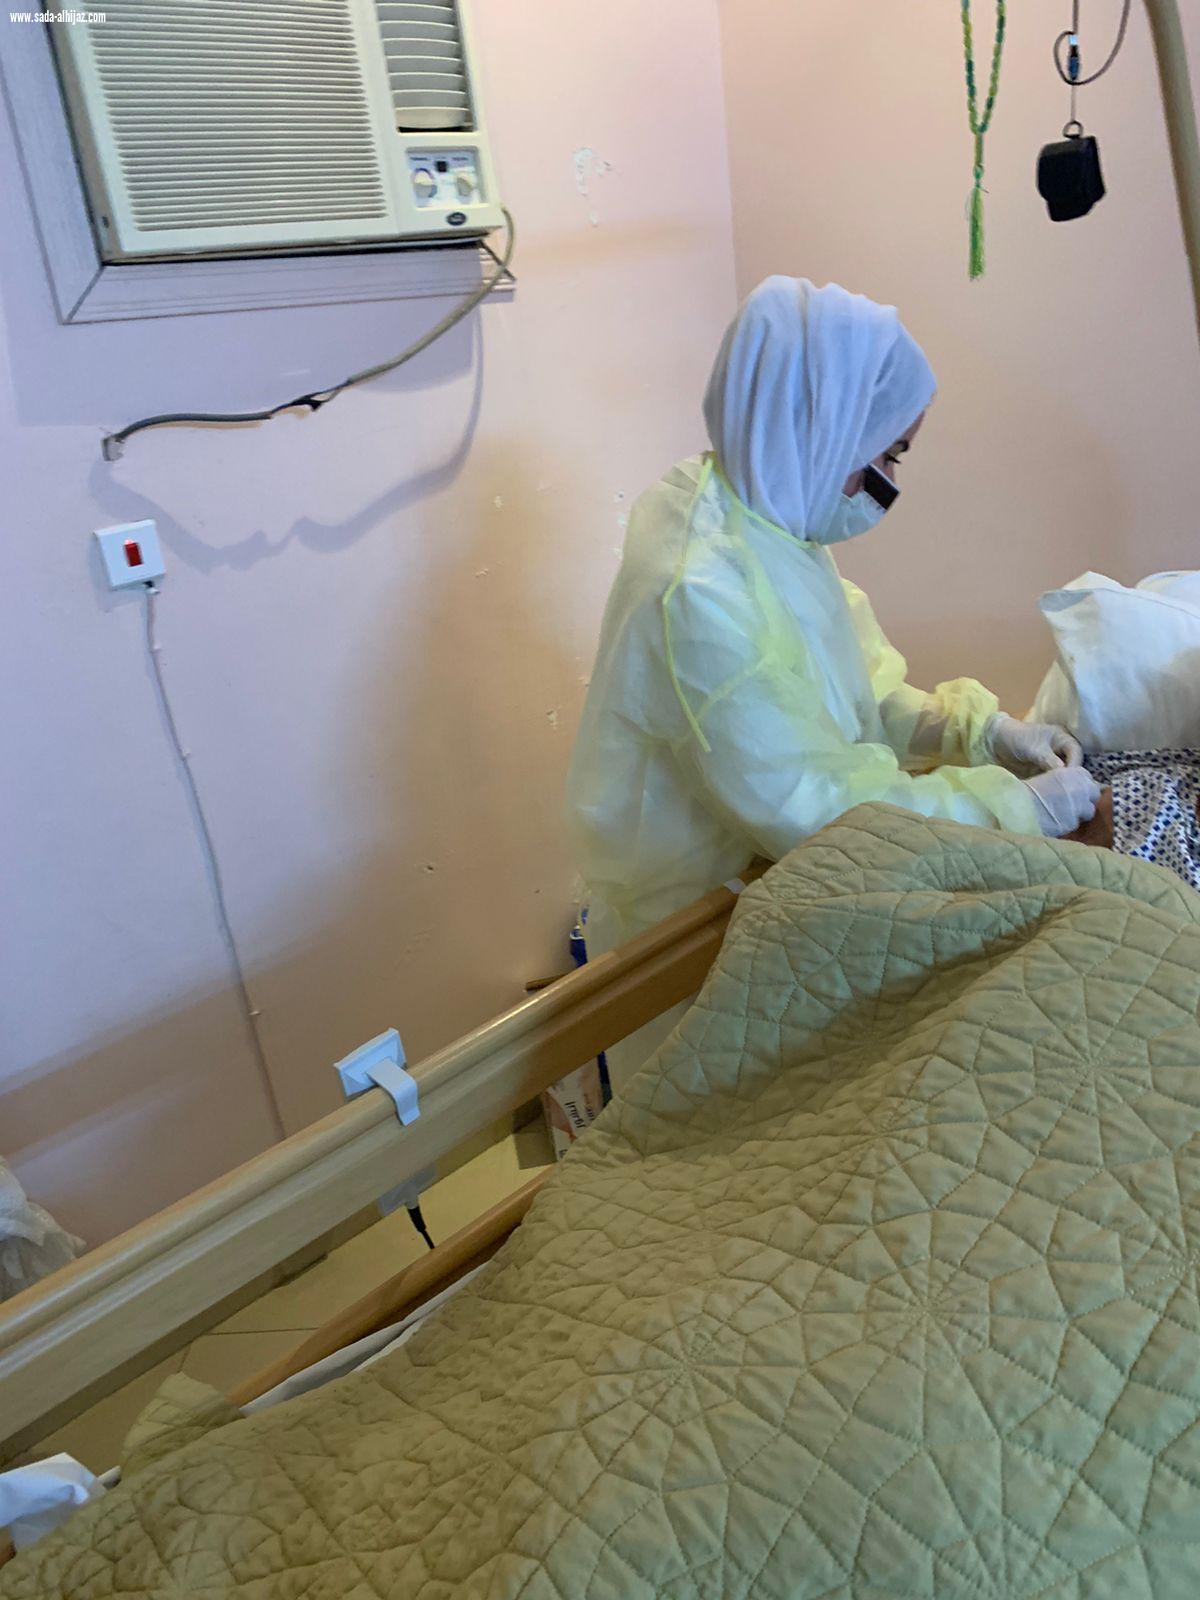 مستشفى الملك فهد بجدة يطلق حملة تطعيم الانفلونزا الموسمية  لمرضى الرعاية المنزلية